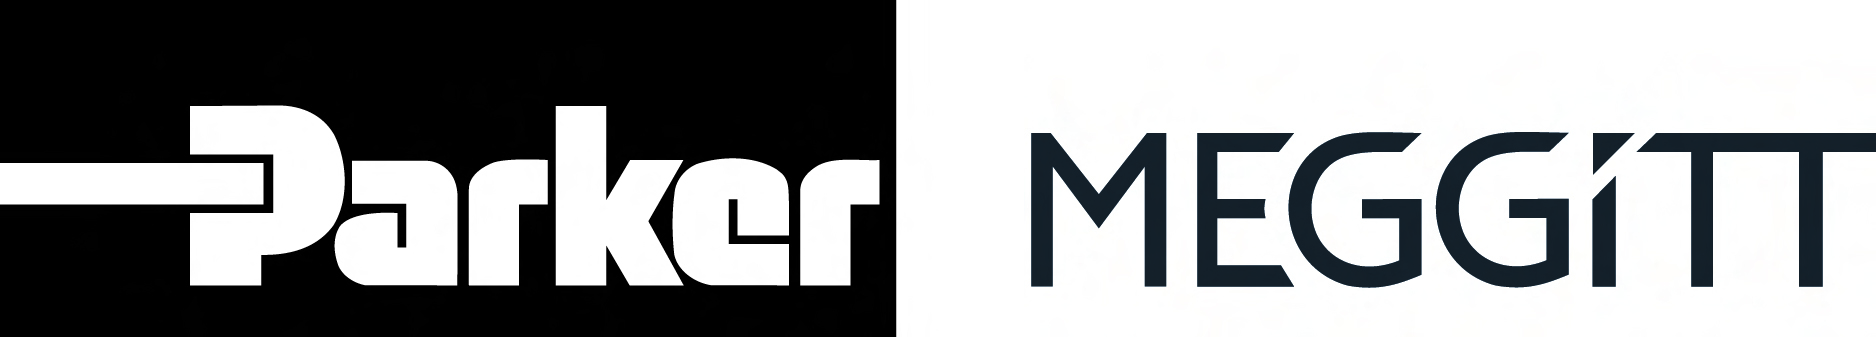 Parker Meggitt Brand Logo